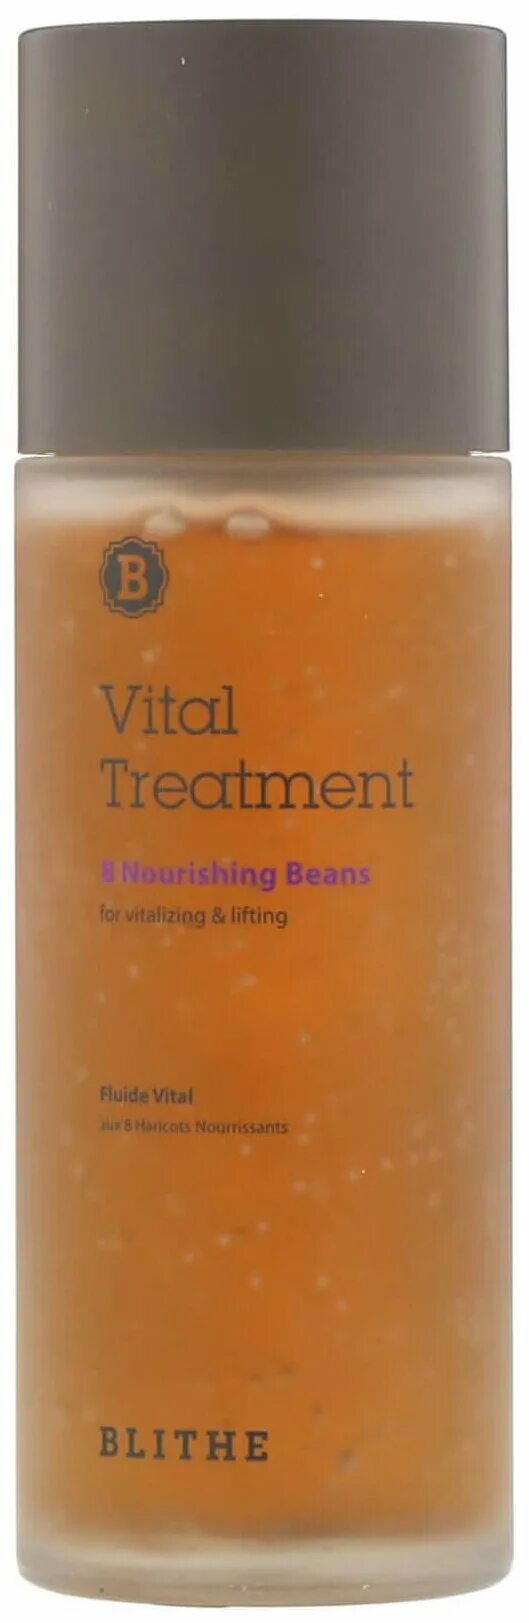 5 эссенция. Тонер-эссенция увлажняющая Blithe Vital treatment 5 Energy roots (150мл). Blithe эссенция питательная «8 питательных бобов», 54мл. Blithe эссенция питательная «8 питательных бобов» - 8 Nourishing Beans 150 мл.